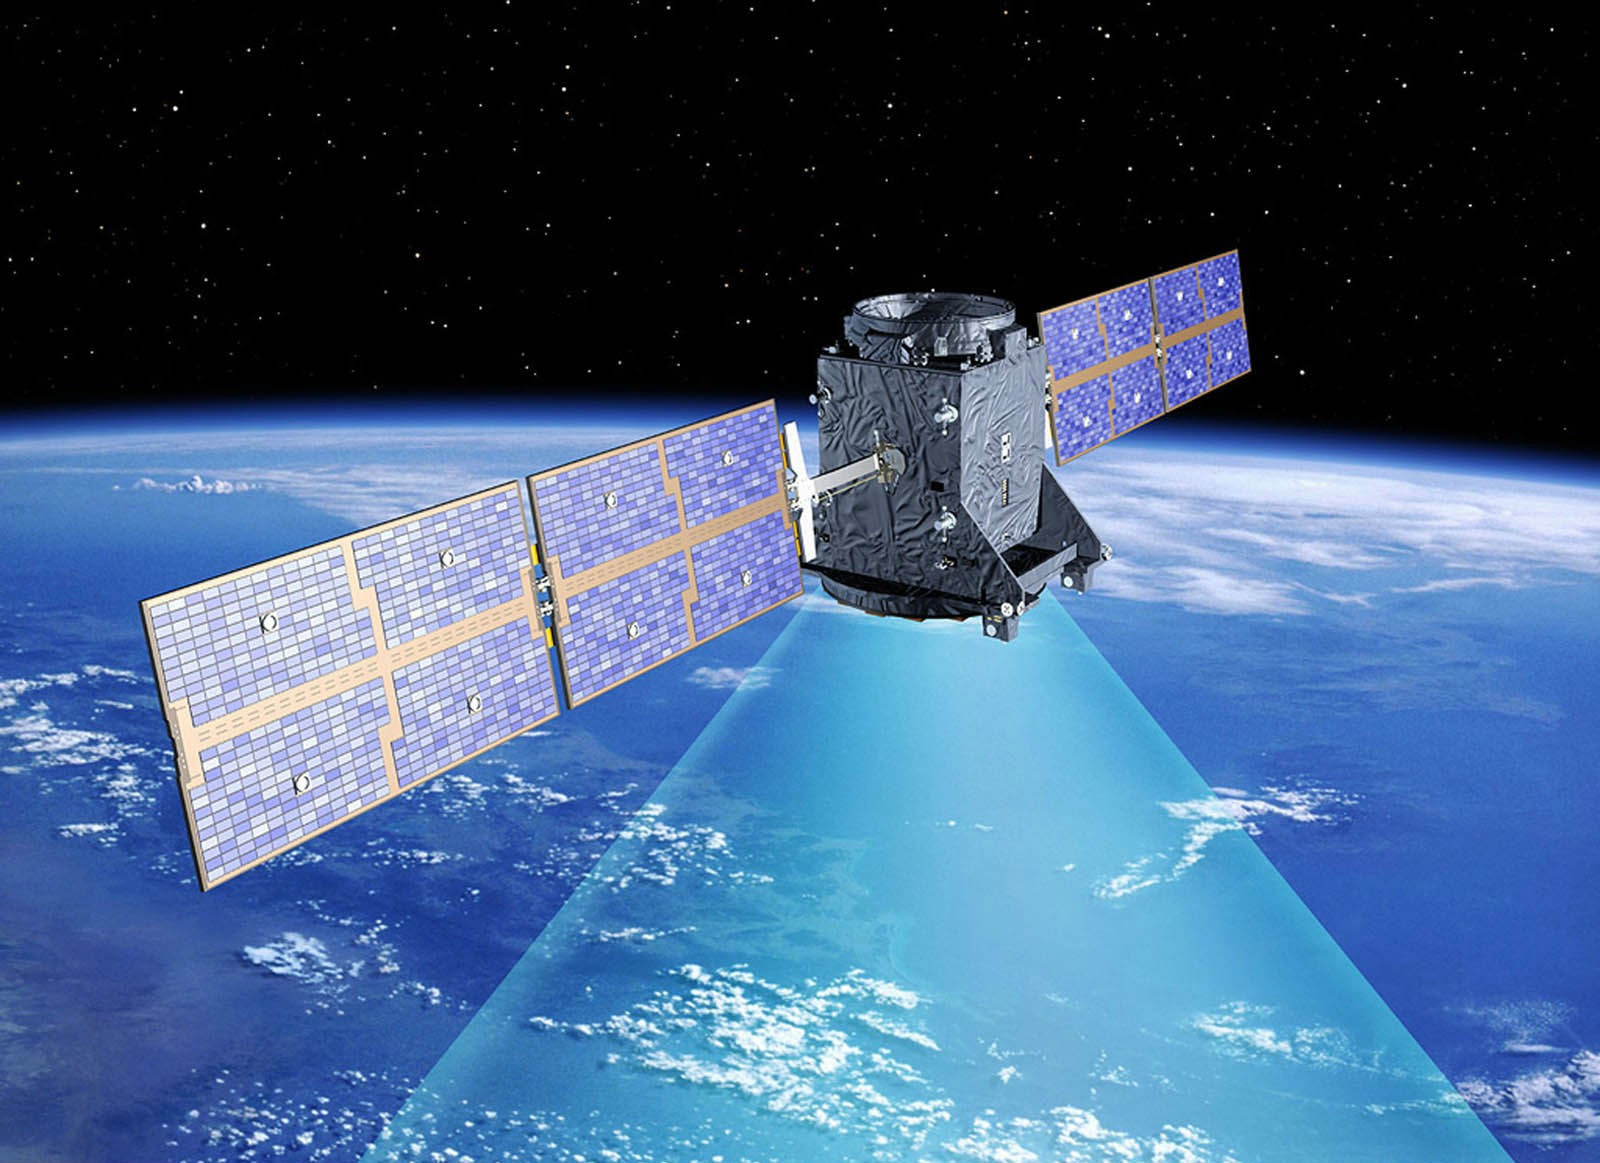 КНР при помощи спутников обеспечит высокоскоростной интернет в транспорте